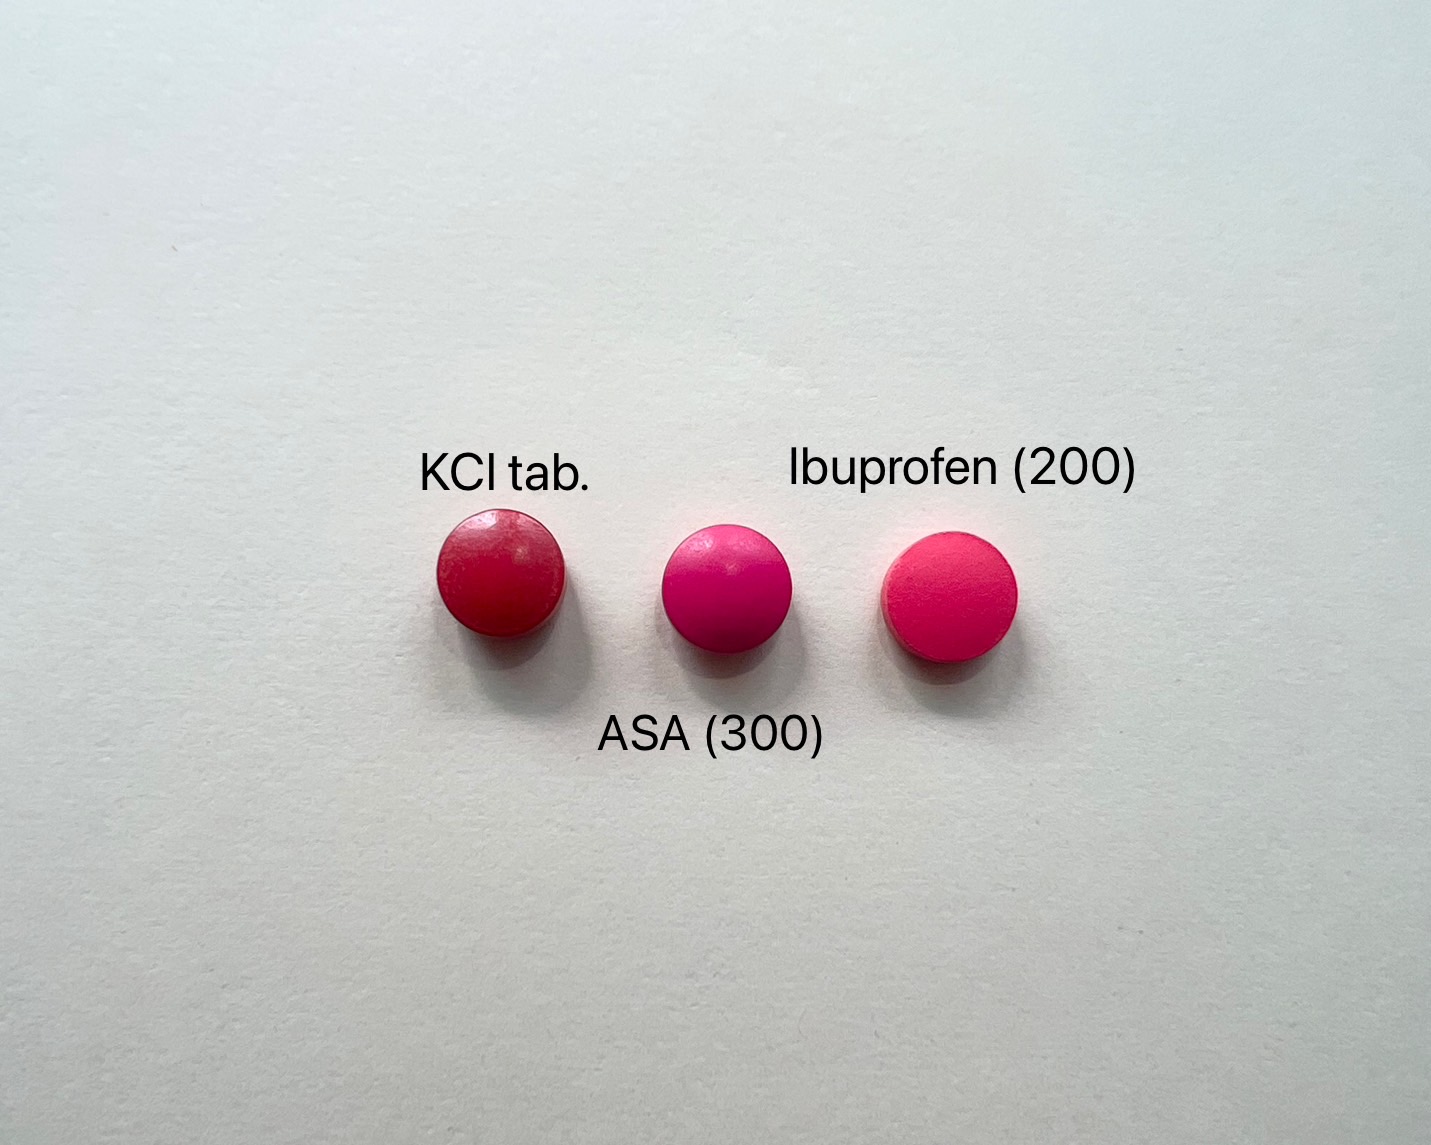 ASA (300) มองคล้ายกับ Ibuprofen (200) และ KCL tab.